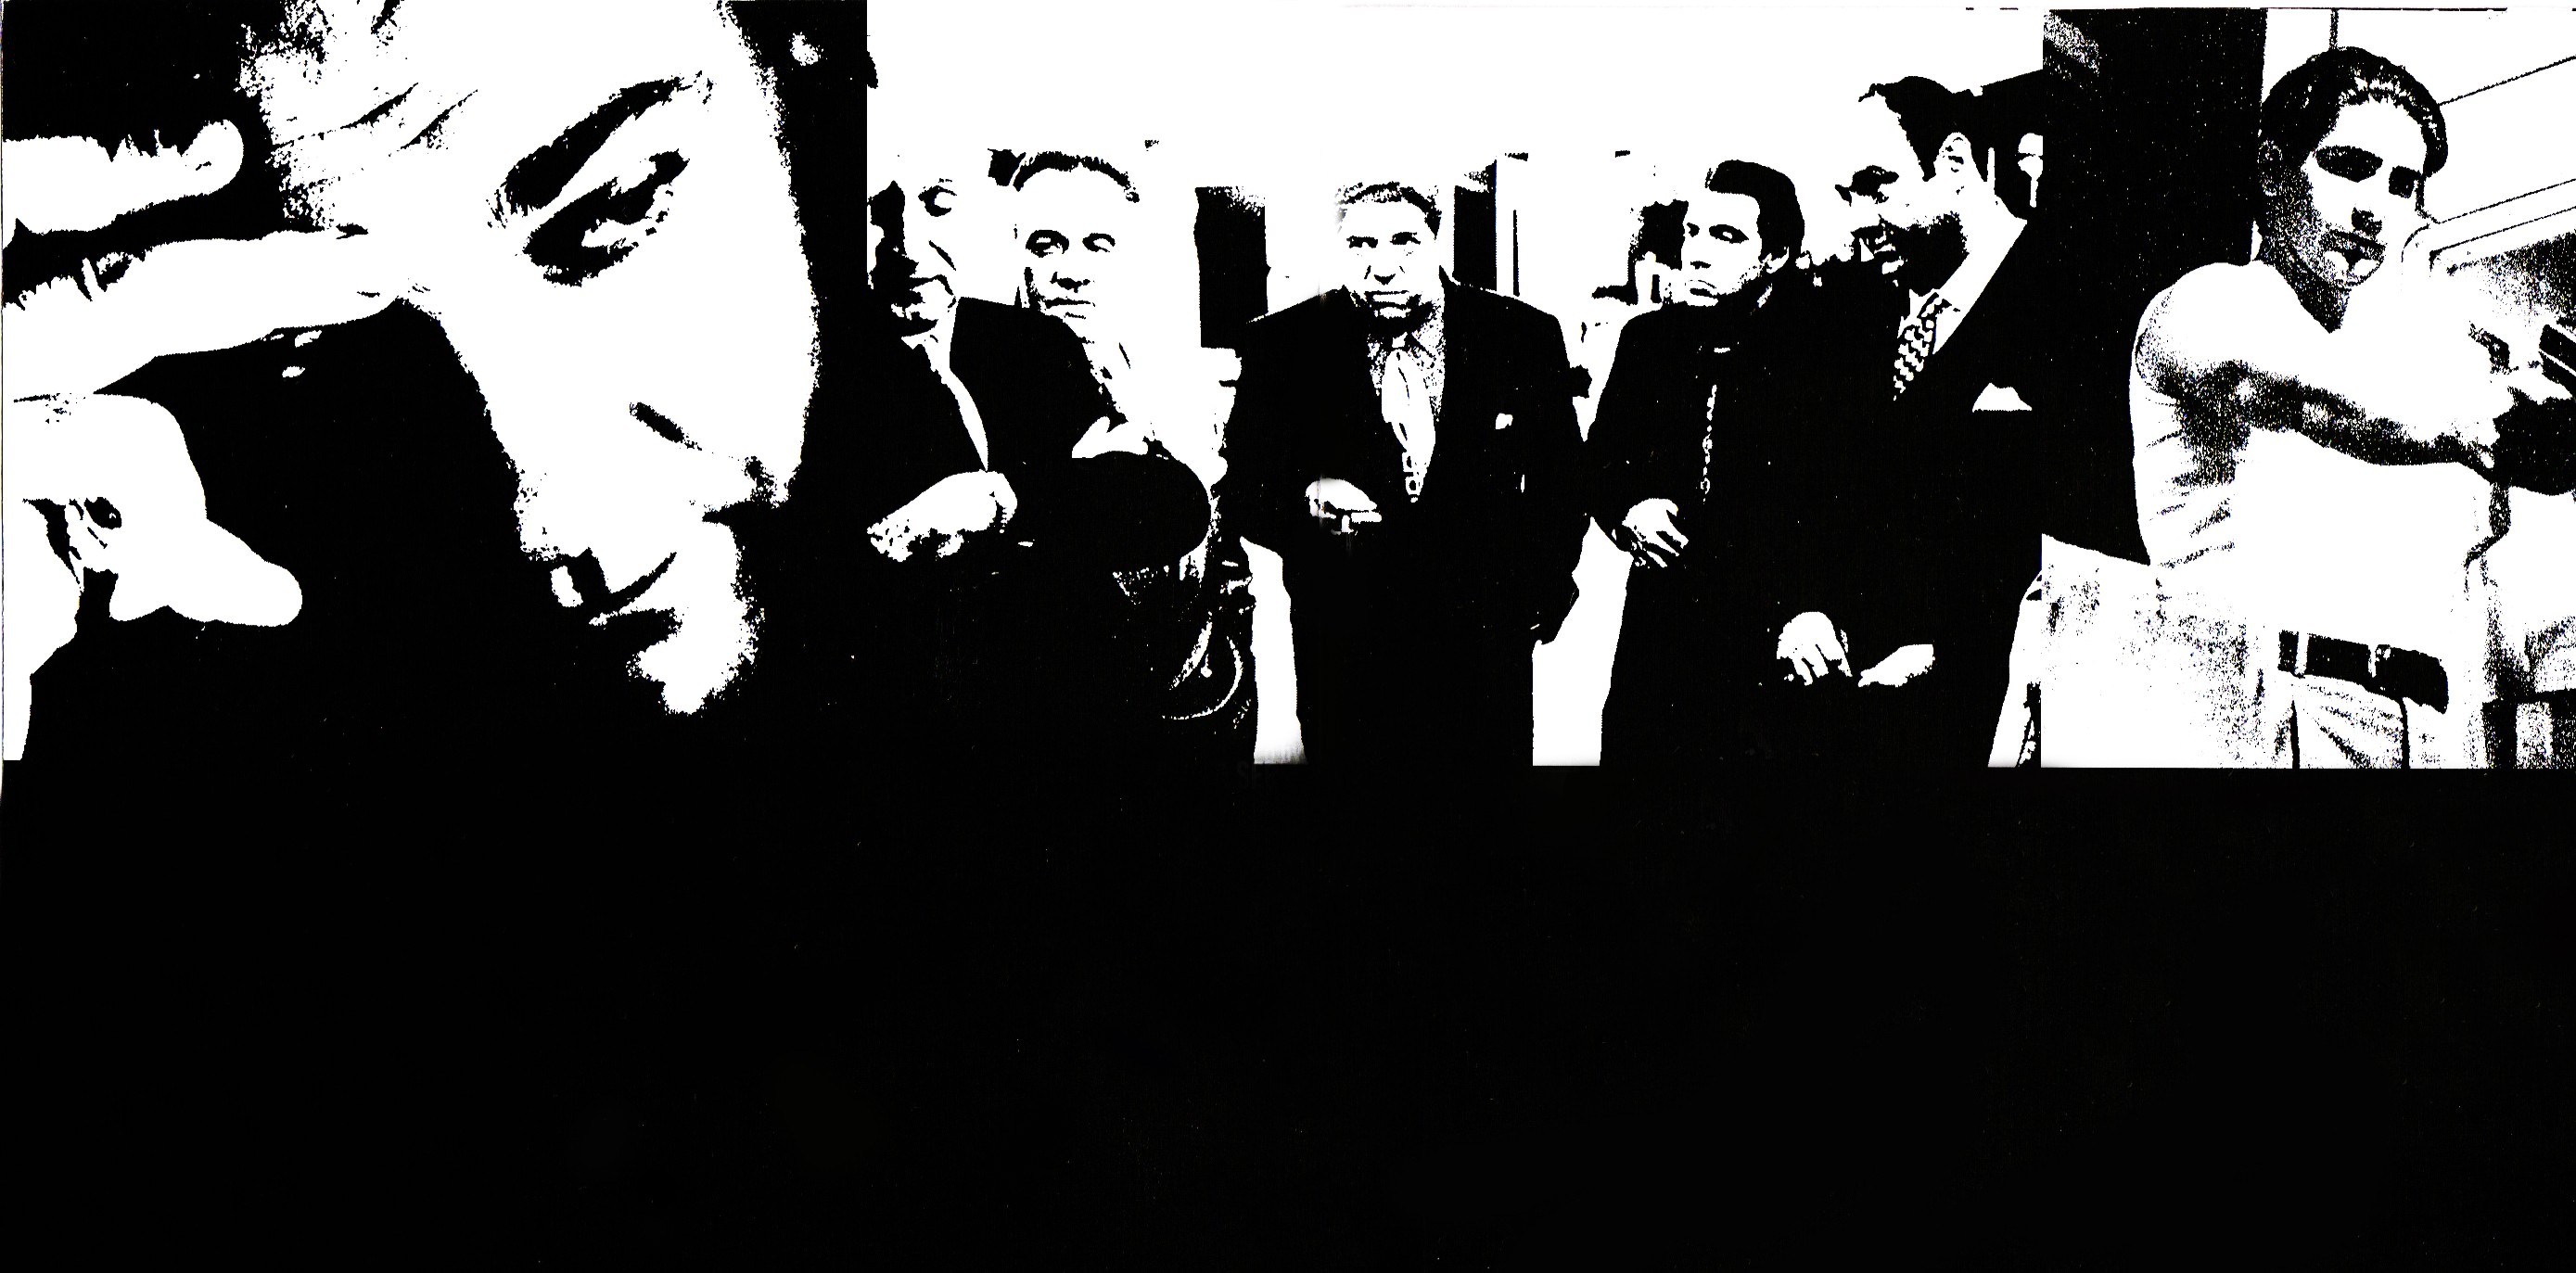 Mafia Series Wallpaper Tv The